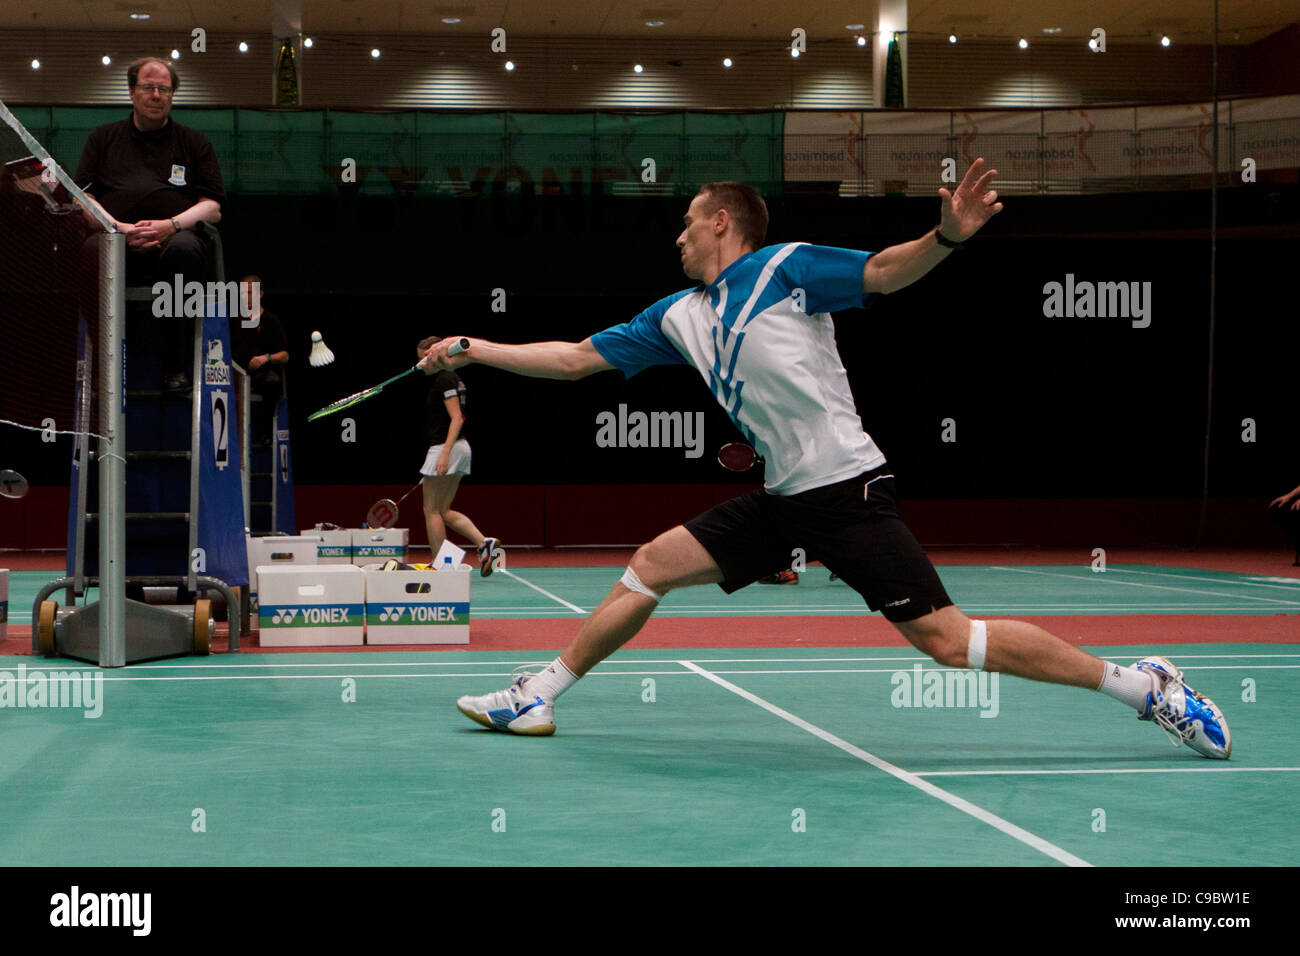 Przemyslaw Wacha joueur de badminton de Pologne Banque D'Images